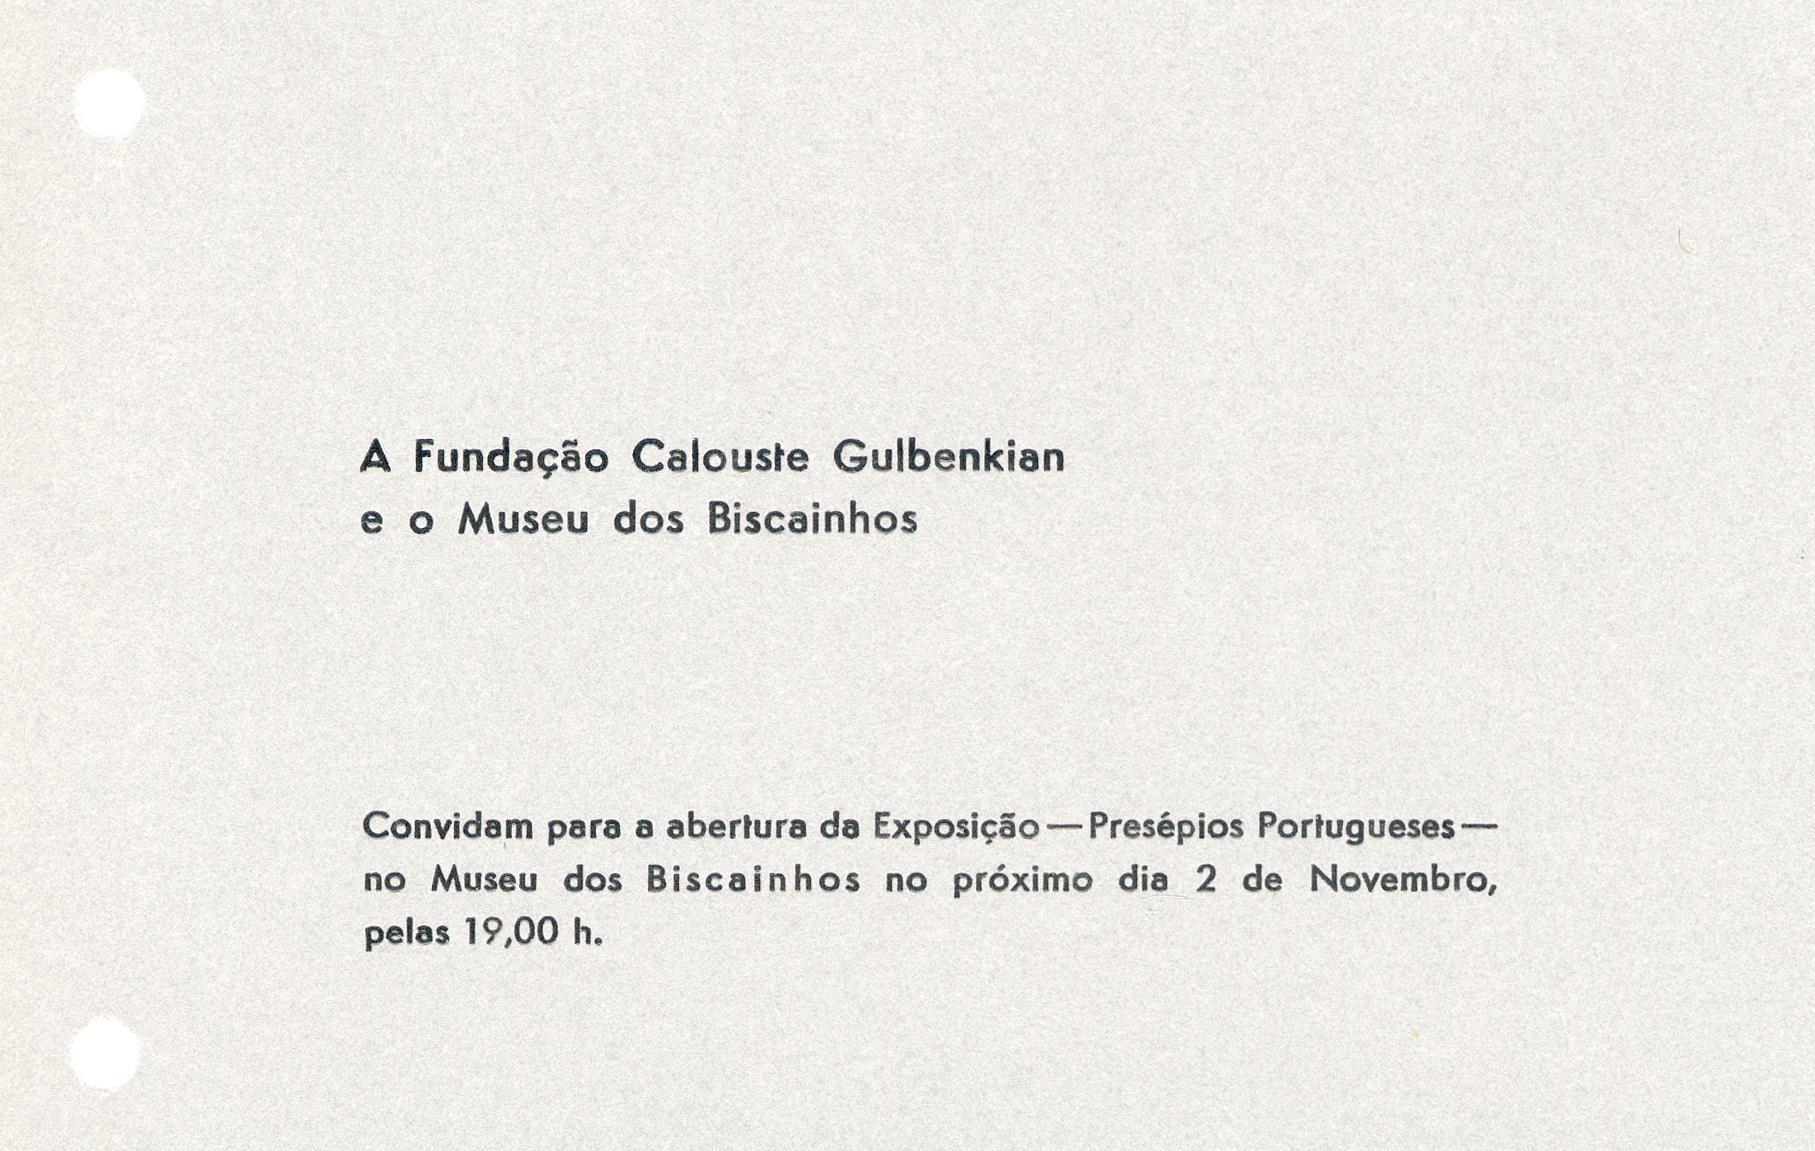 Creches Portugaises. Presépios Portugueses. Exposição Itinerante da Fundação Calouste Gulbenkian